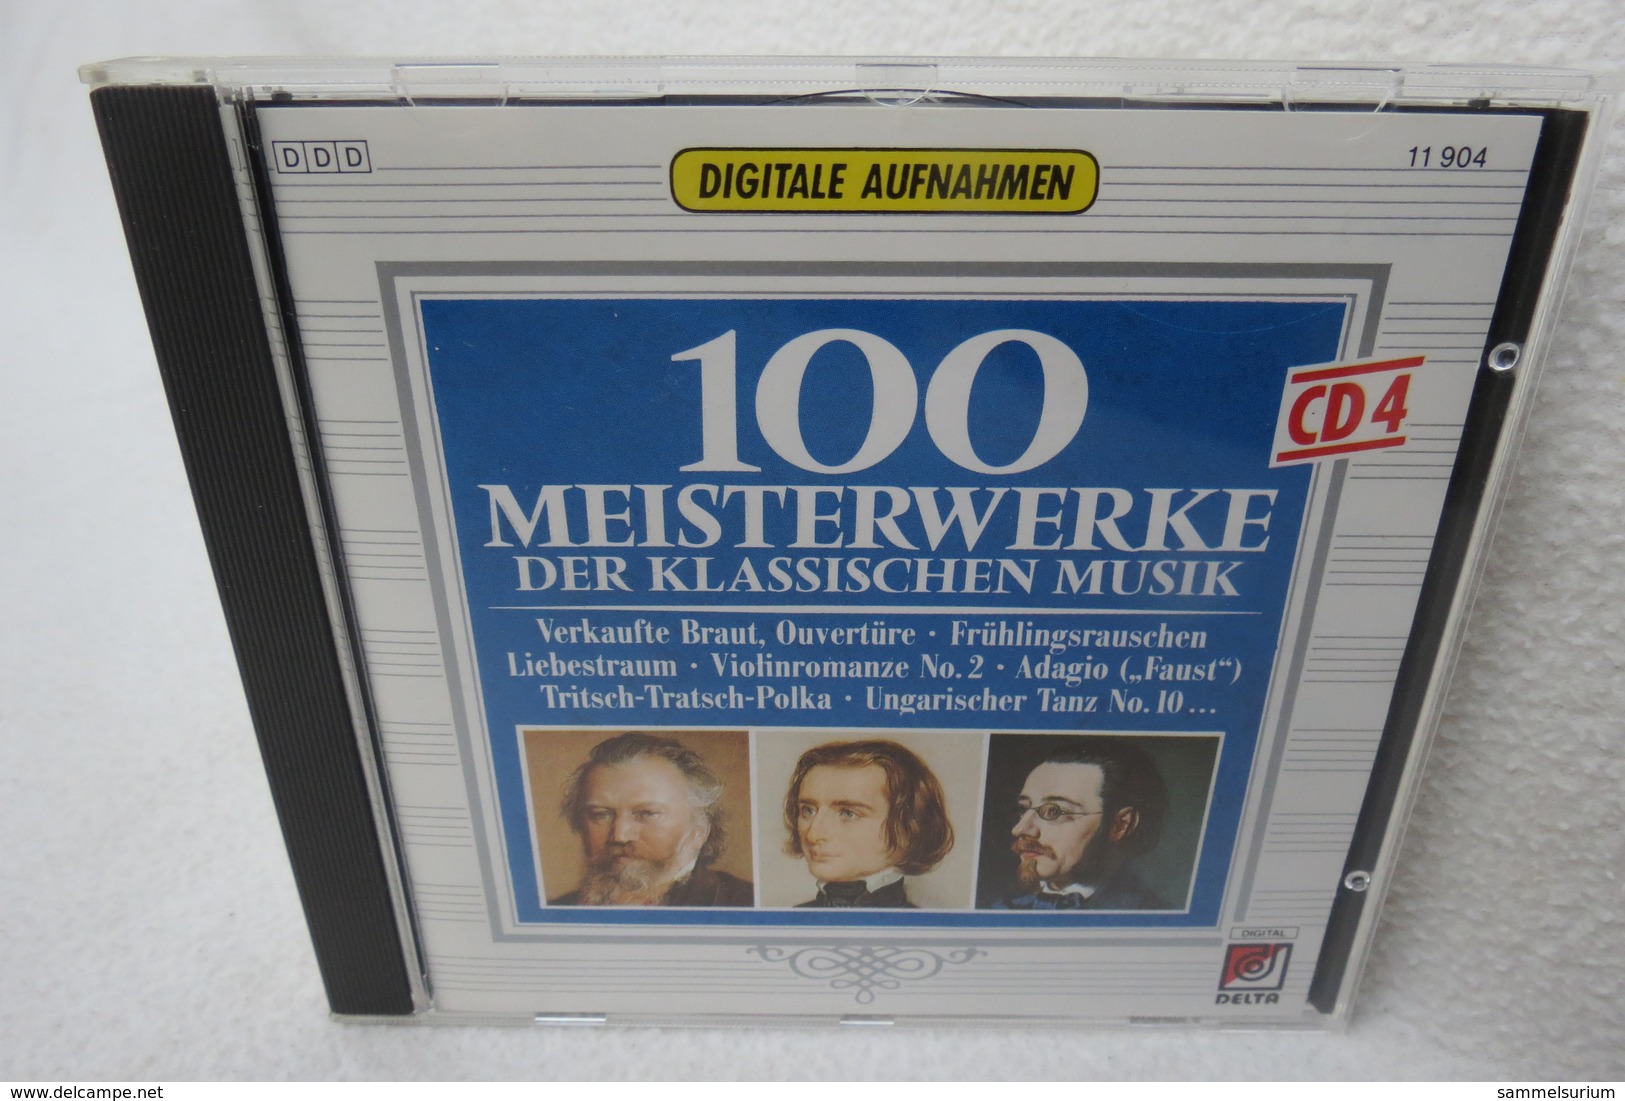 CD "100 Meisterwerke Der Klassischen Musik" CD 4 - Klassik